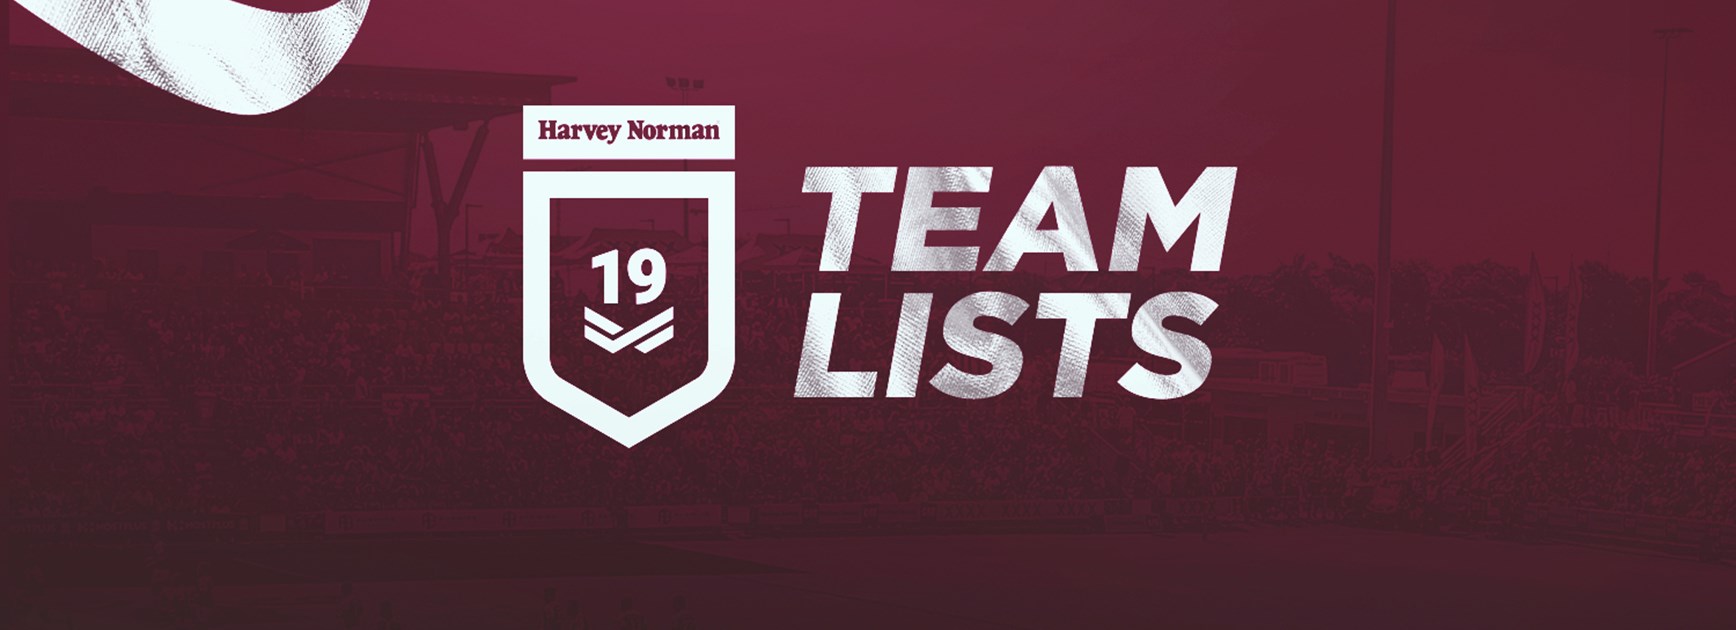 Round 5 Harvey Norman Under 19s team lists